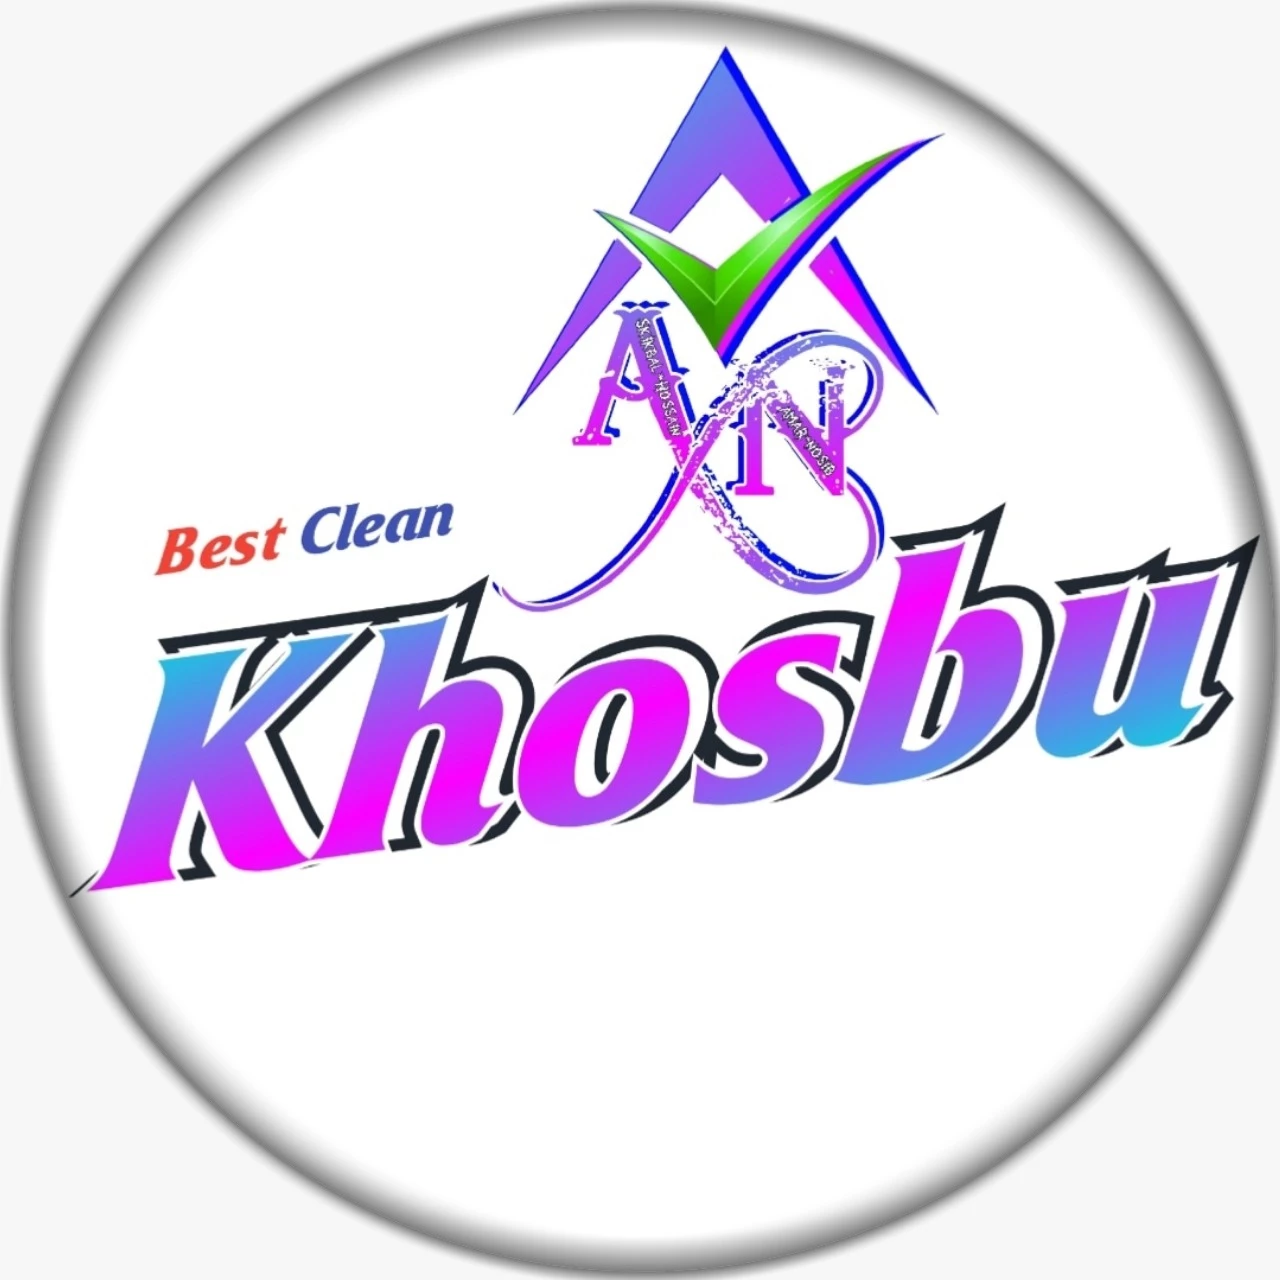 Khosbu